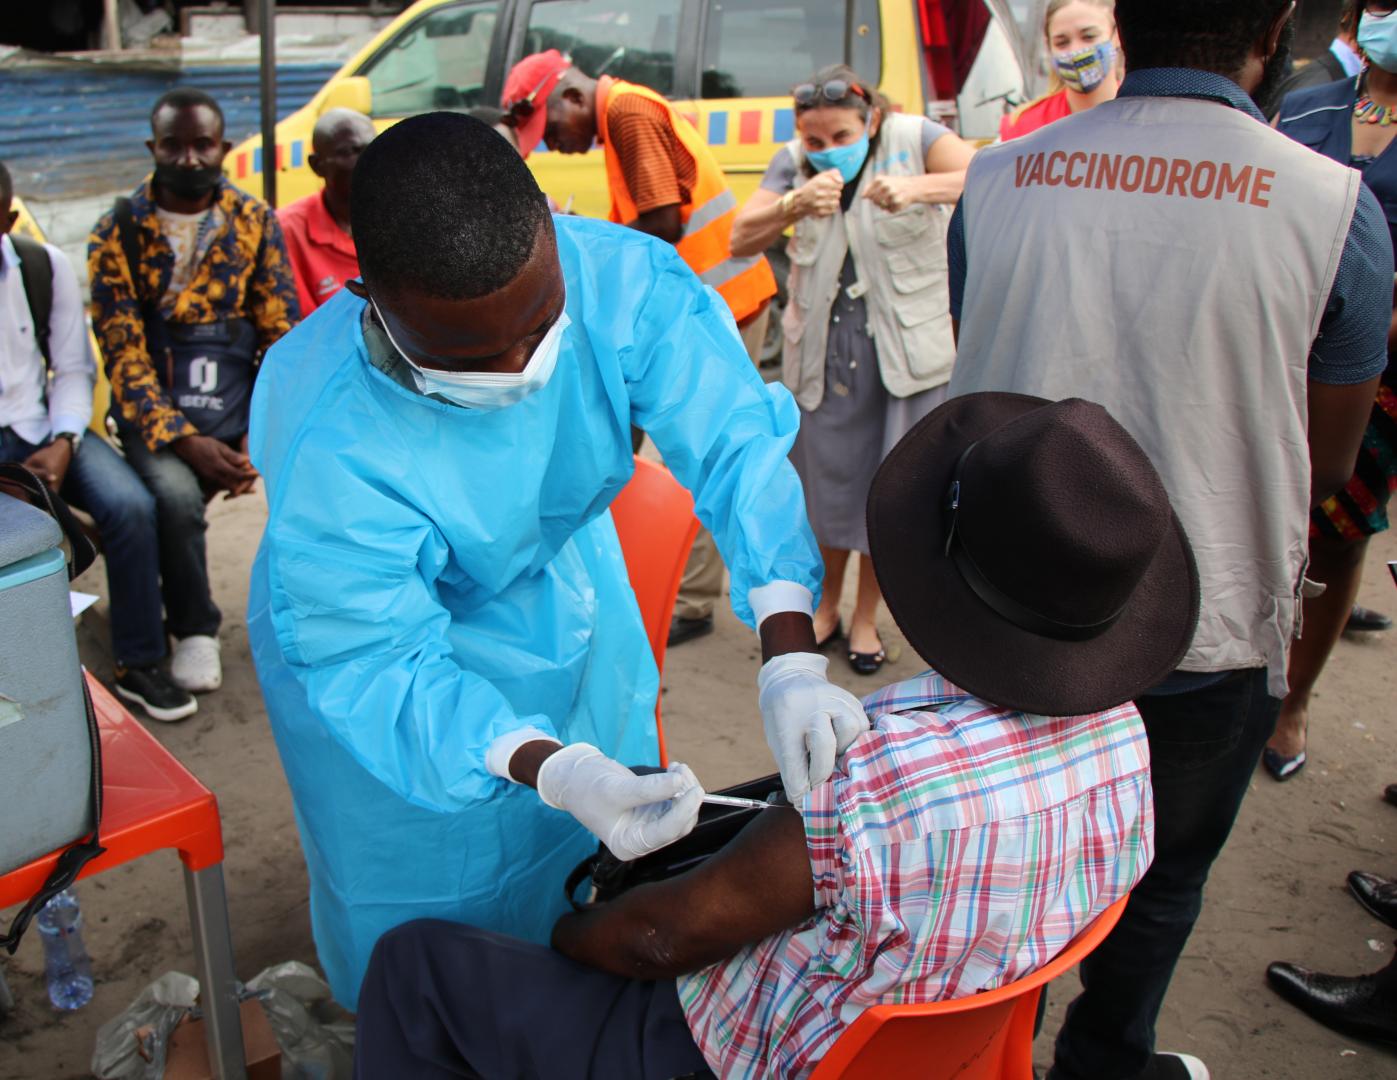 Au quartier 01 de N'djili, une équipe mobile vaccine les personnes éligibles de 18 ans et plus pour les protéger du virus mortel de SARS-CoV-2, à Kinshasa, en RDC --ek 